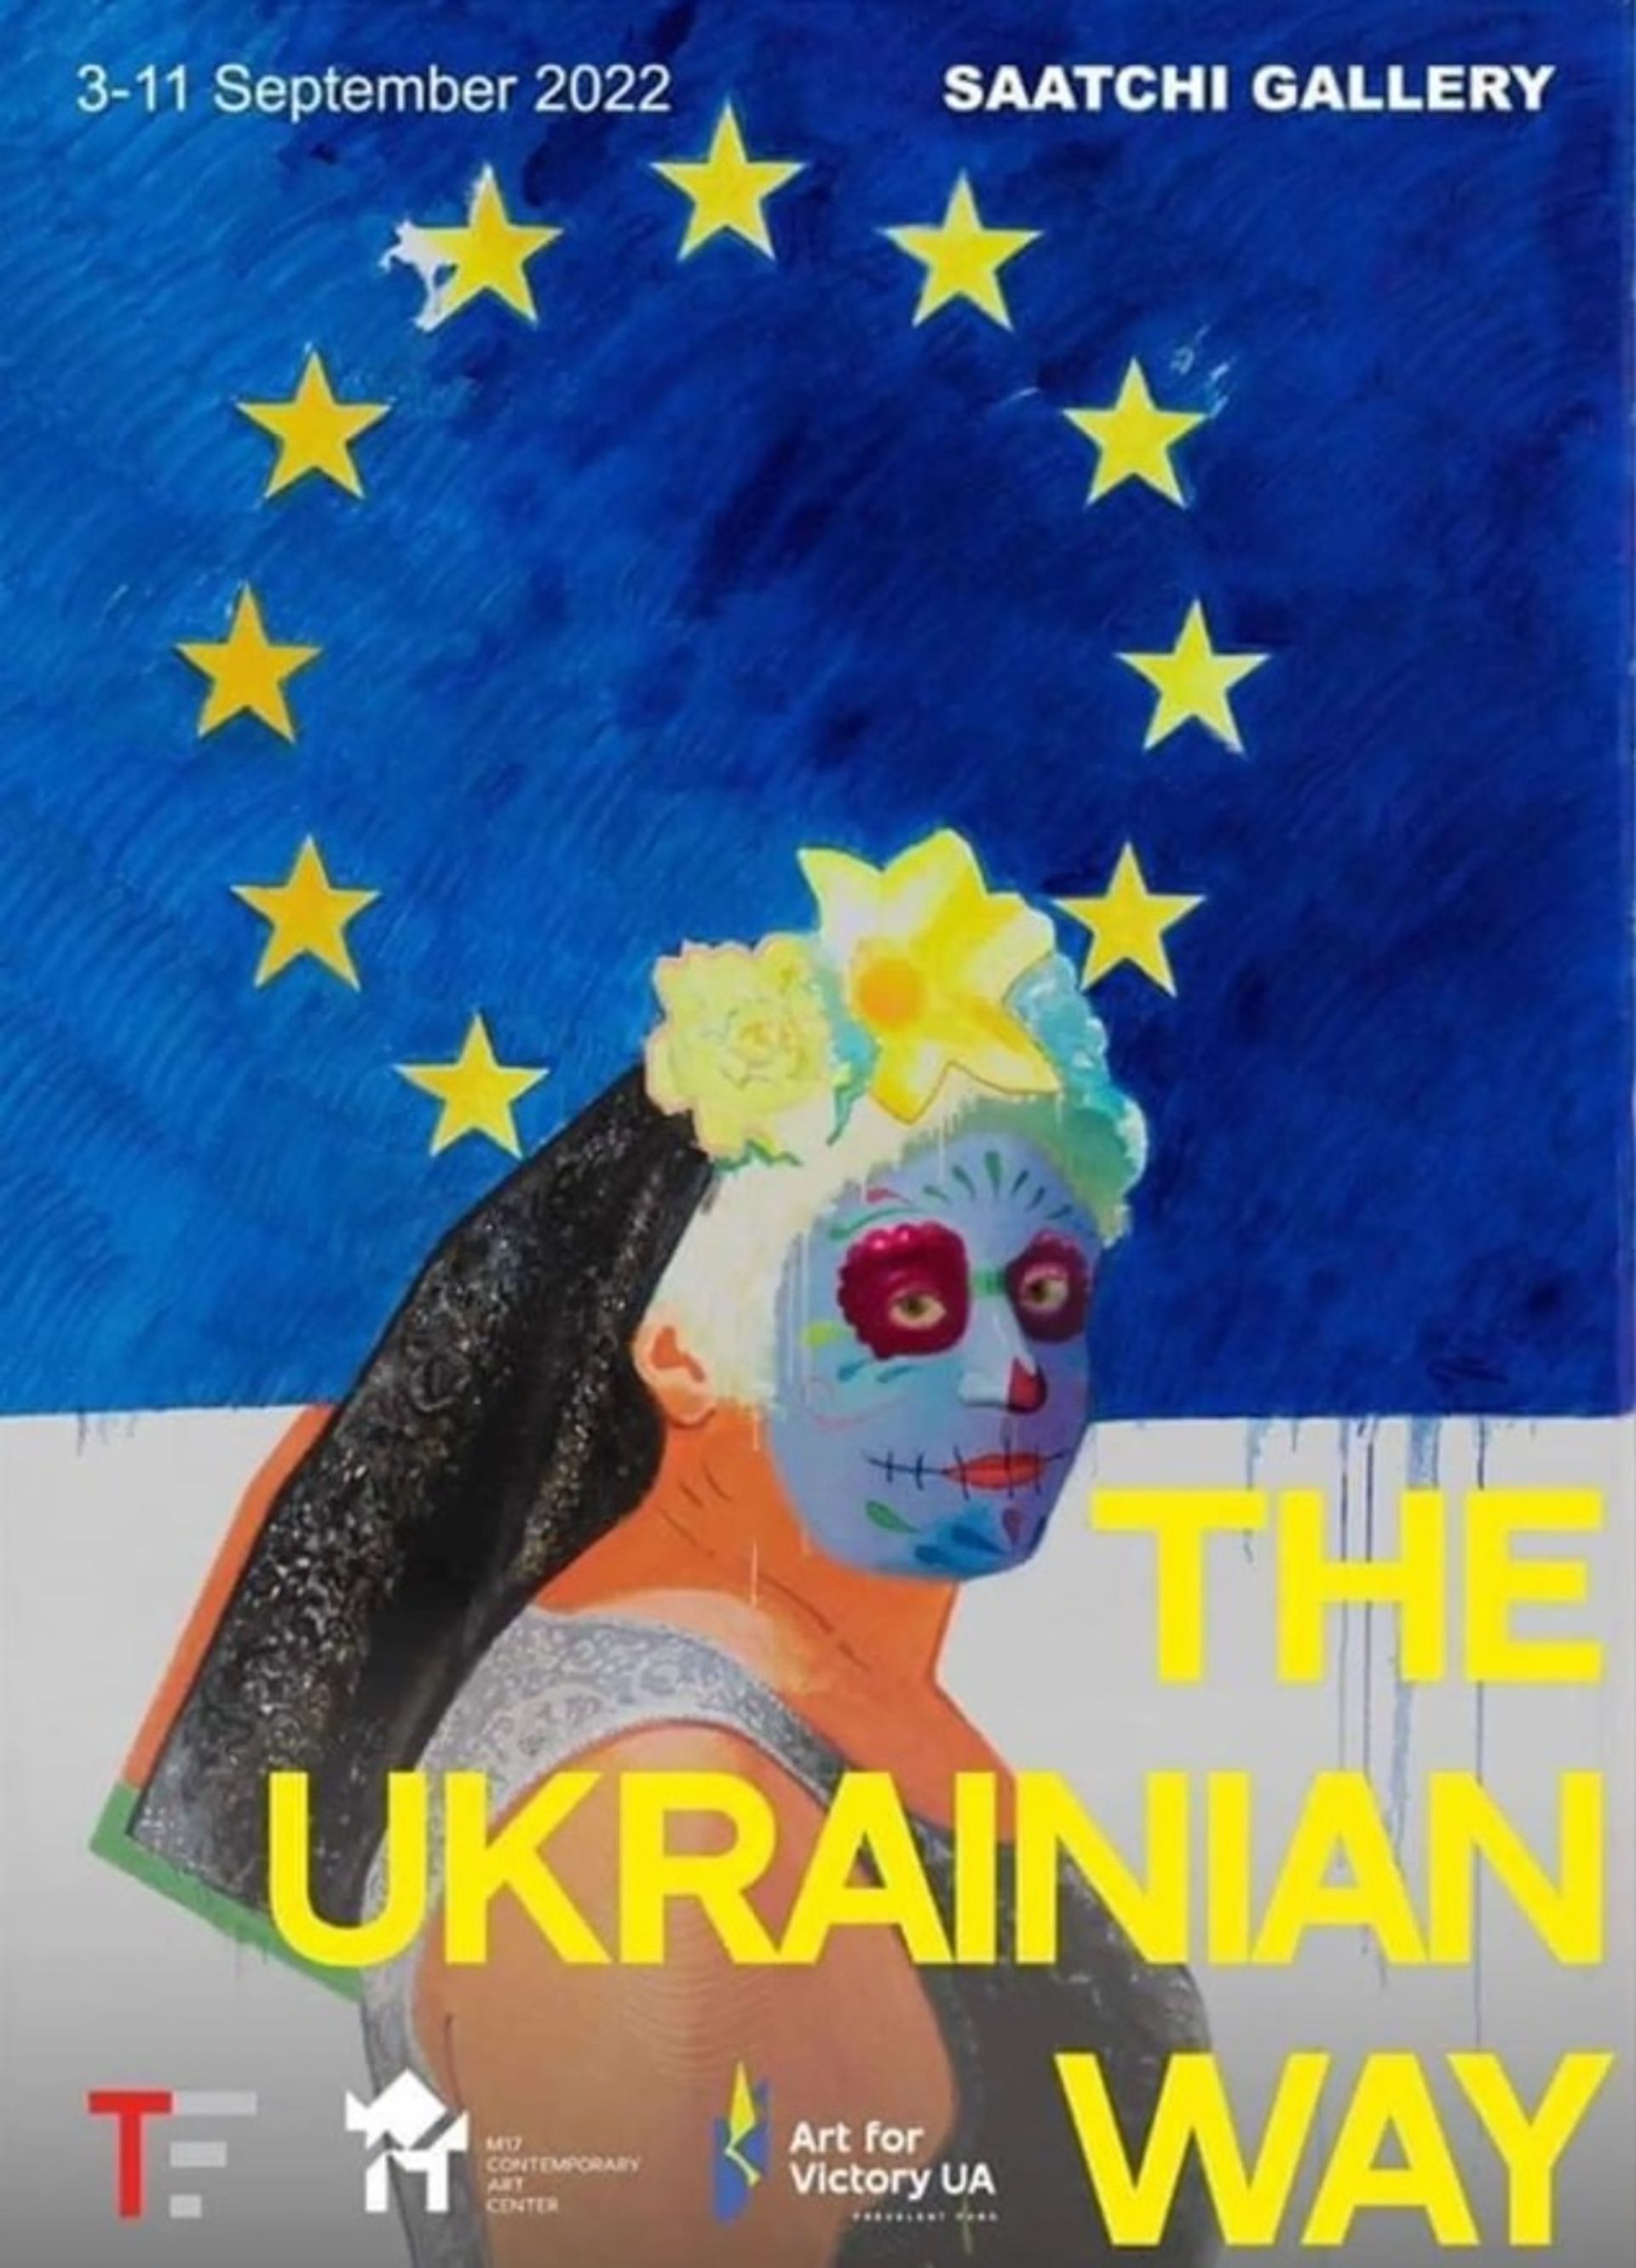 הכרזה לקידום תערוכת 'הדרך האוקראינית' בגלריה סאצ'י בלונדון